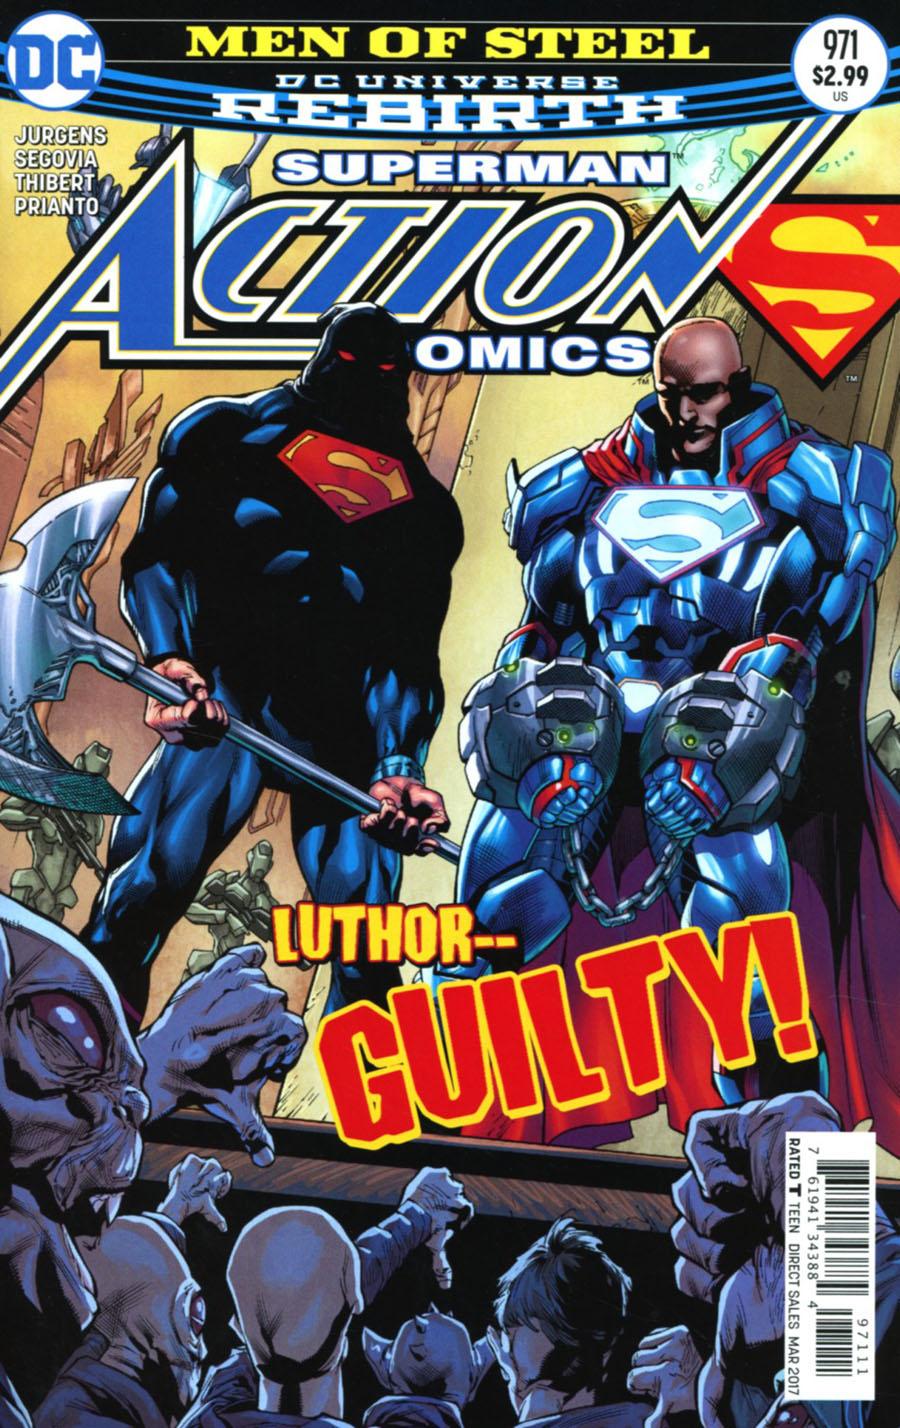 Action Comics Vol. 2 #971